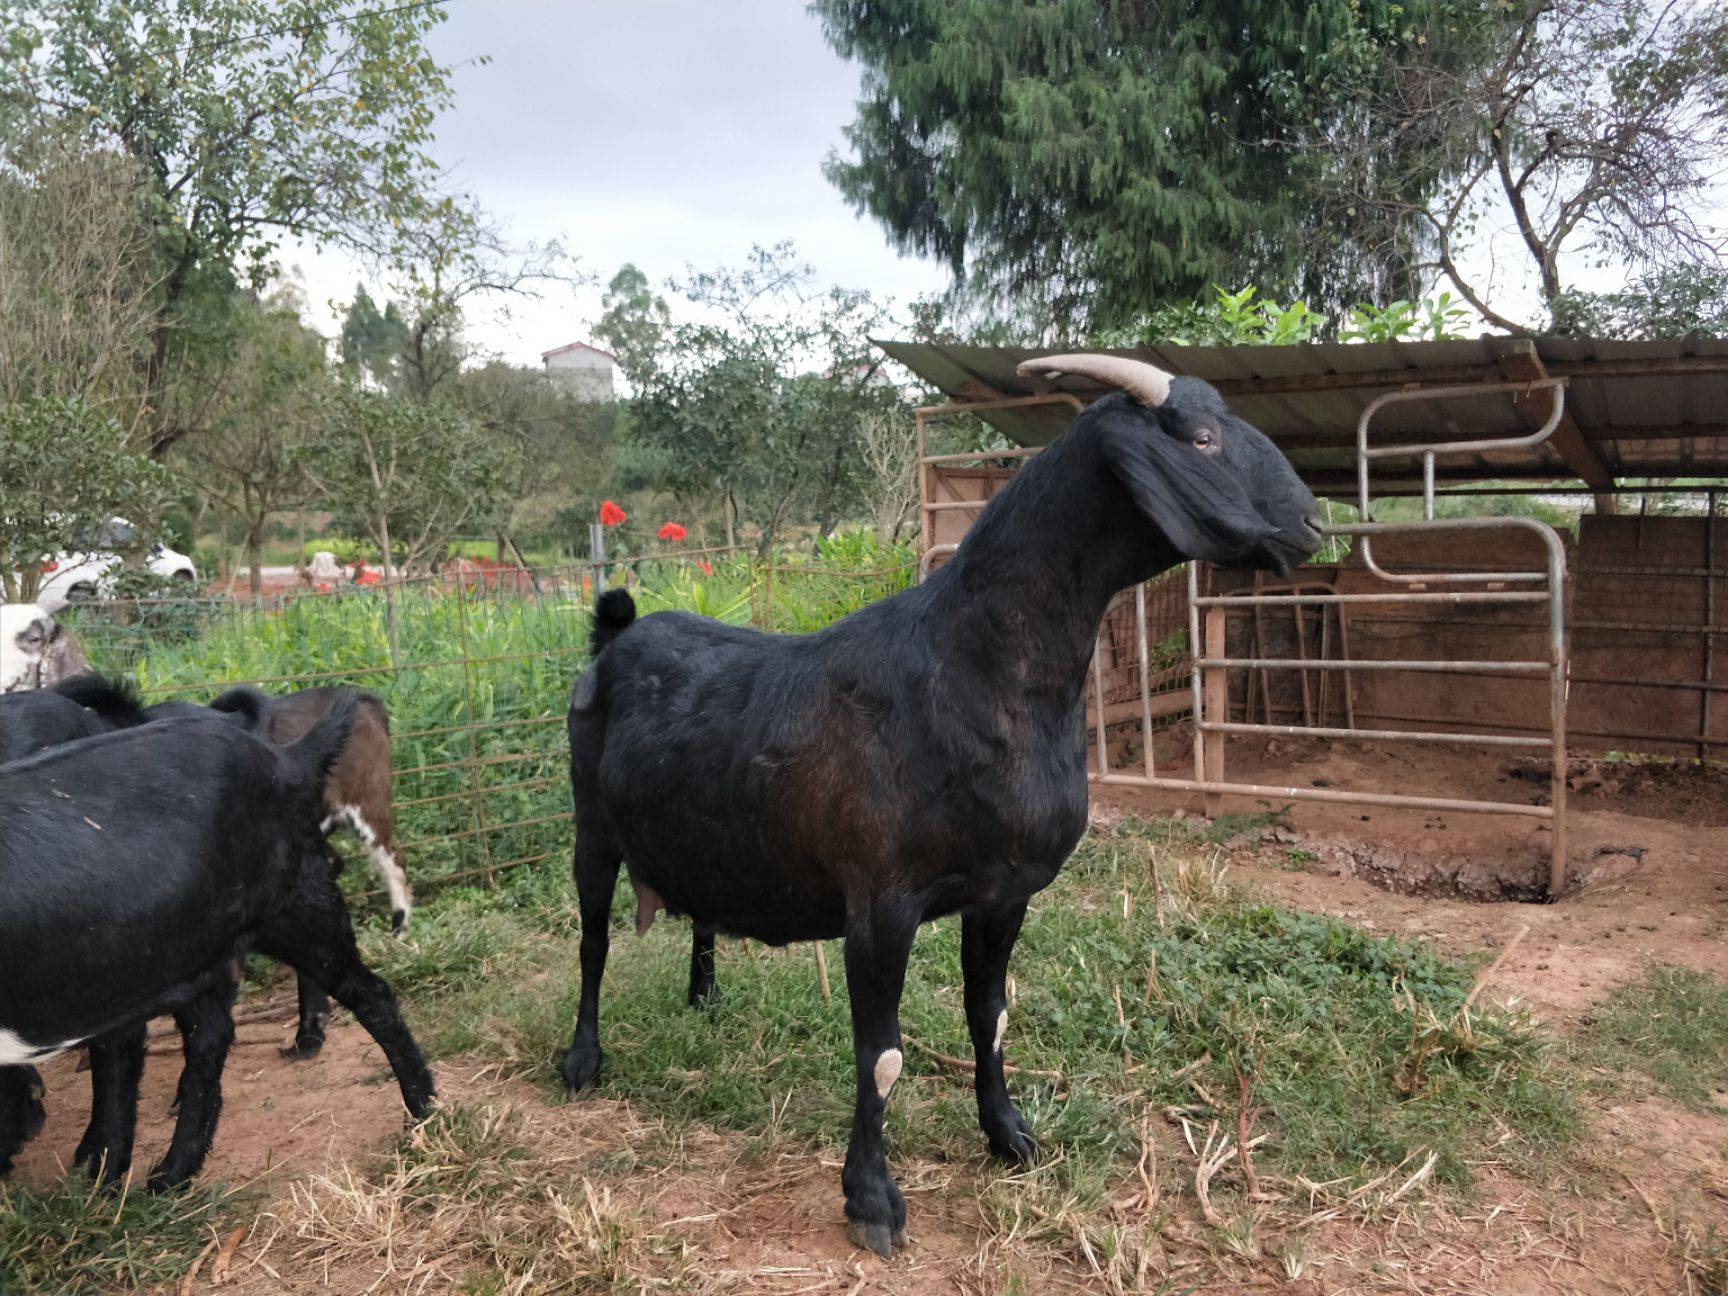 努比亚黑山羊成本与利润努比亚黑山羊养殖利润分析-好运养殖